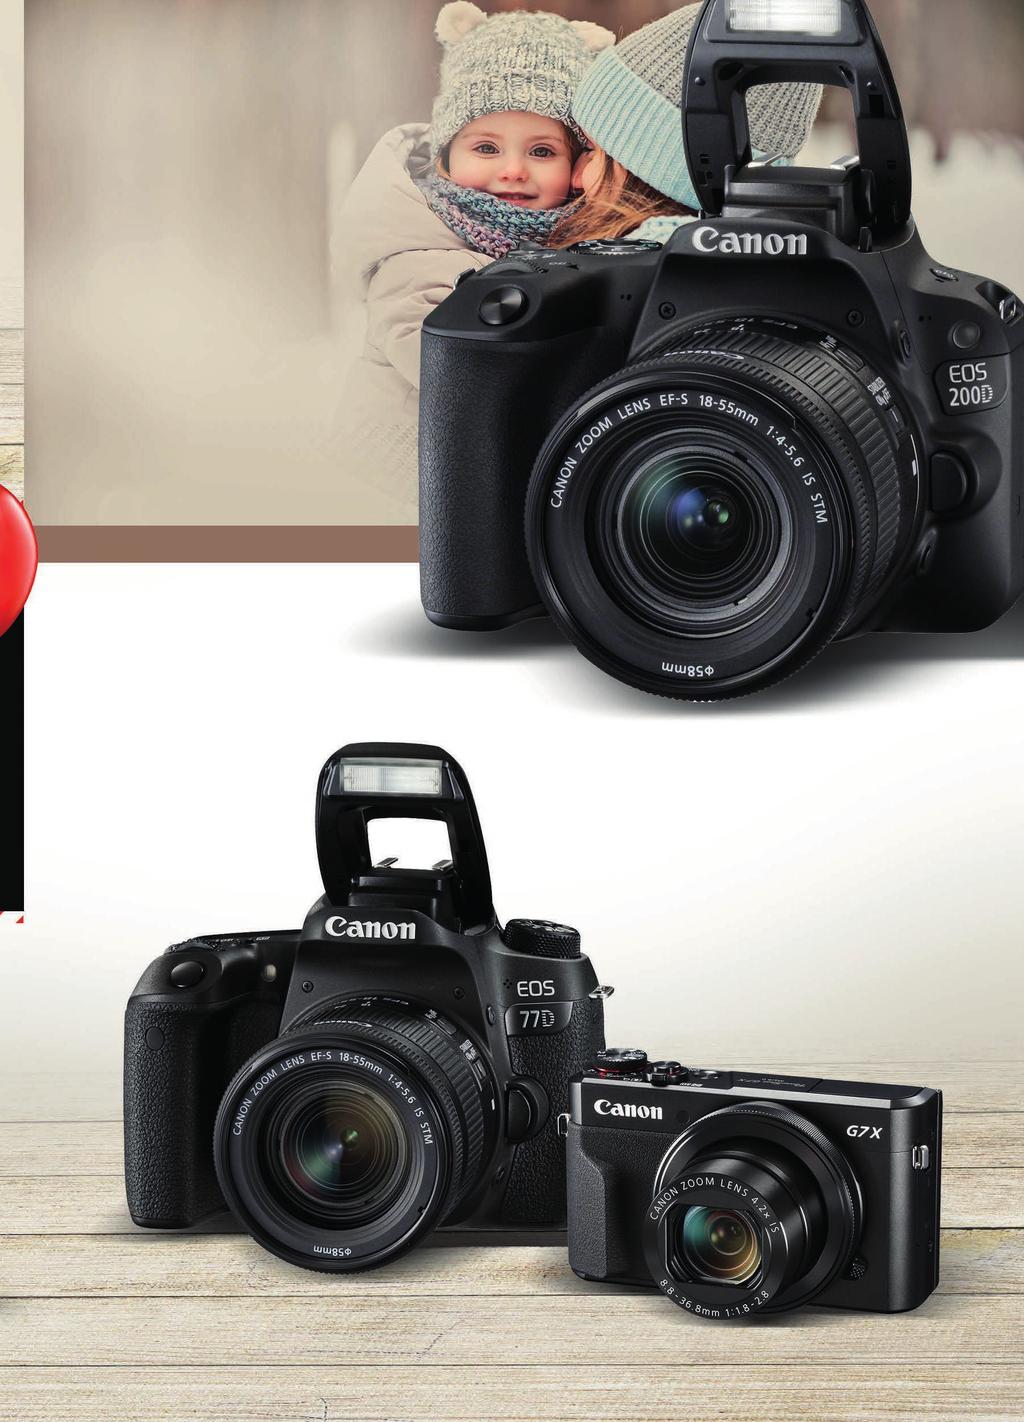 Zrcadlovky Canon Canon EOS 200D + EF-S 18-55mm IS STM + Irista 100 GB Malá a lehká digitální